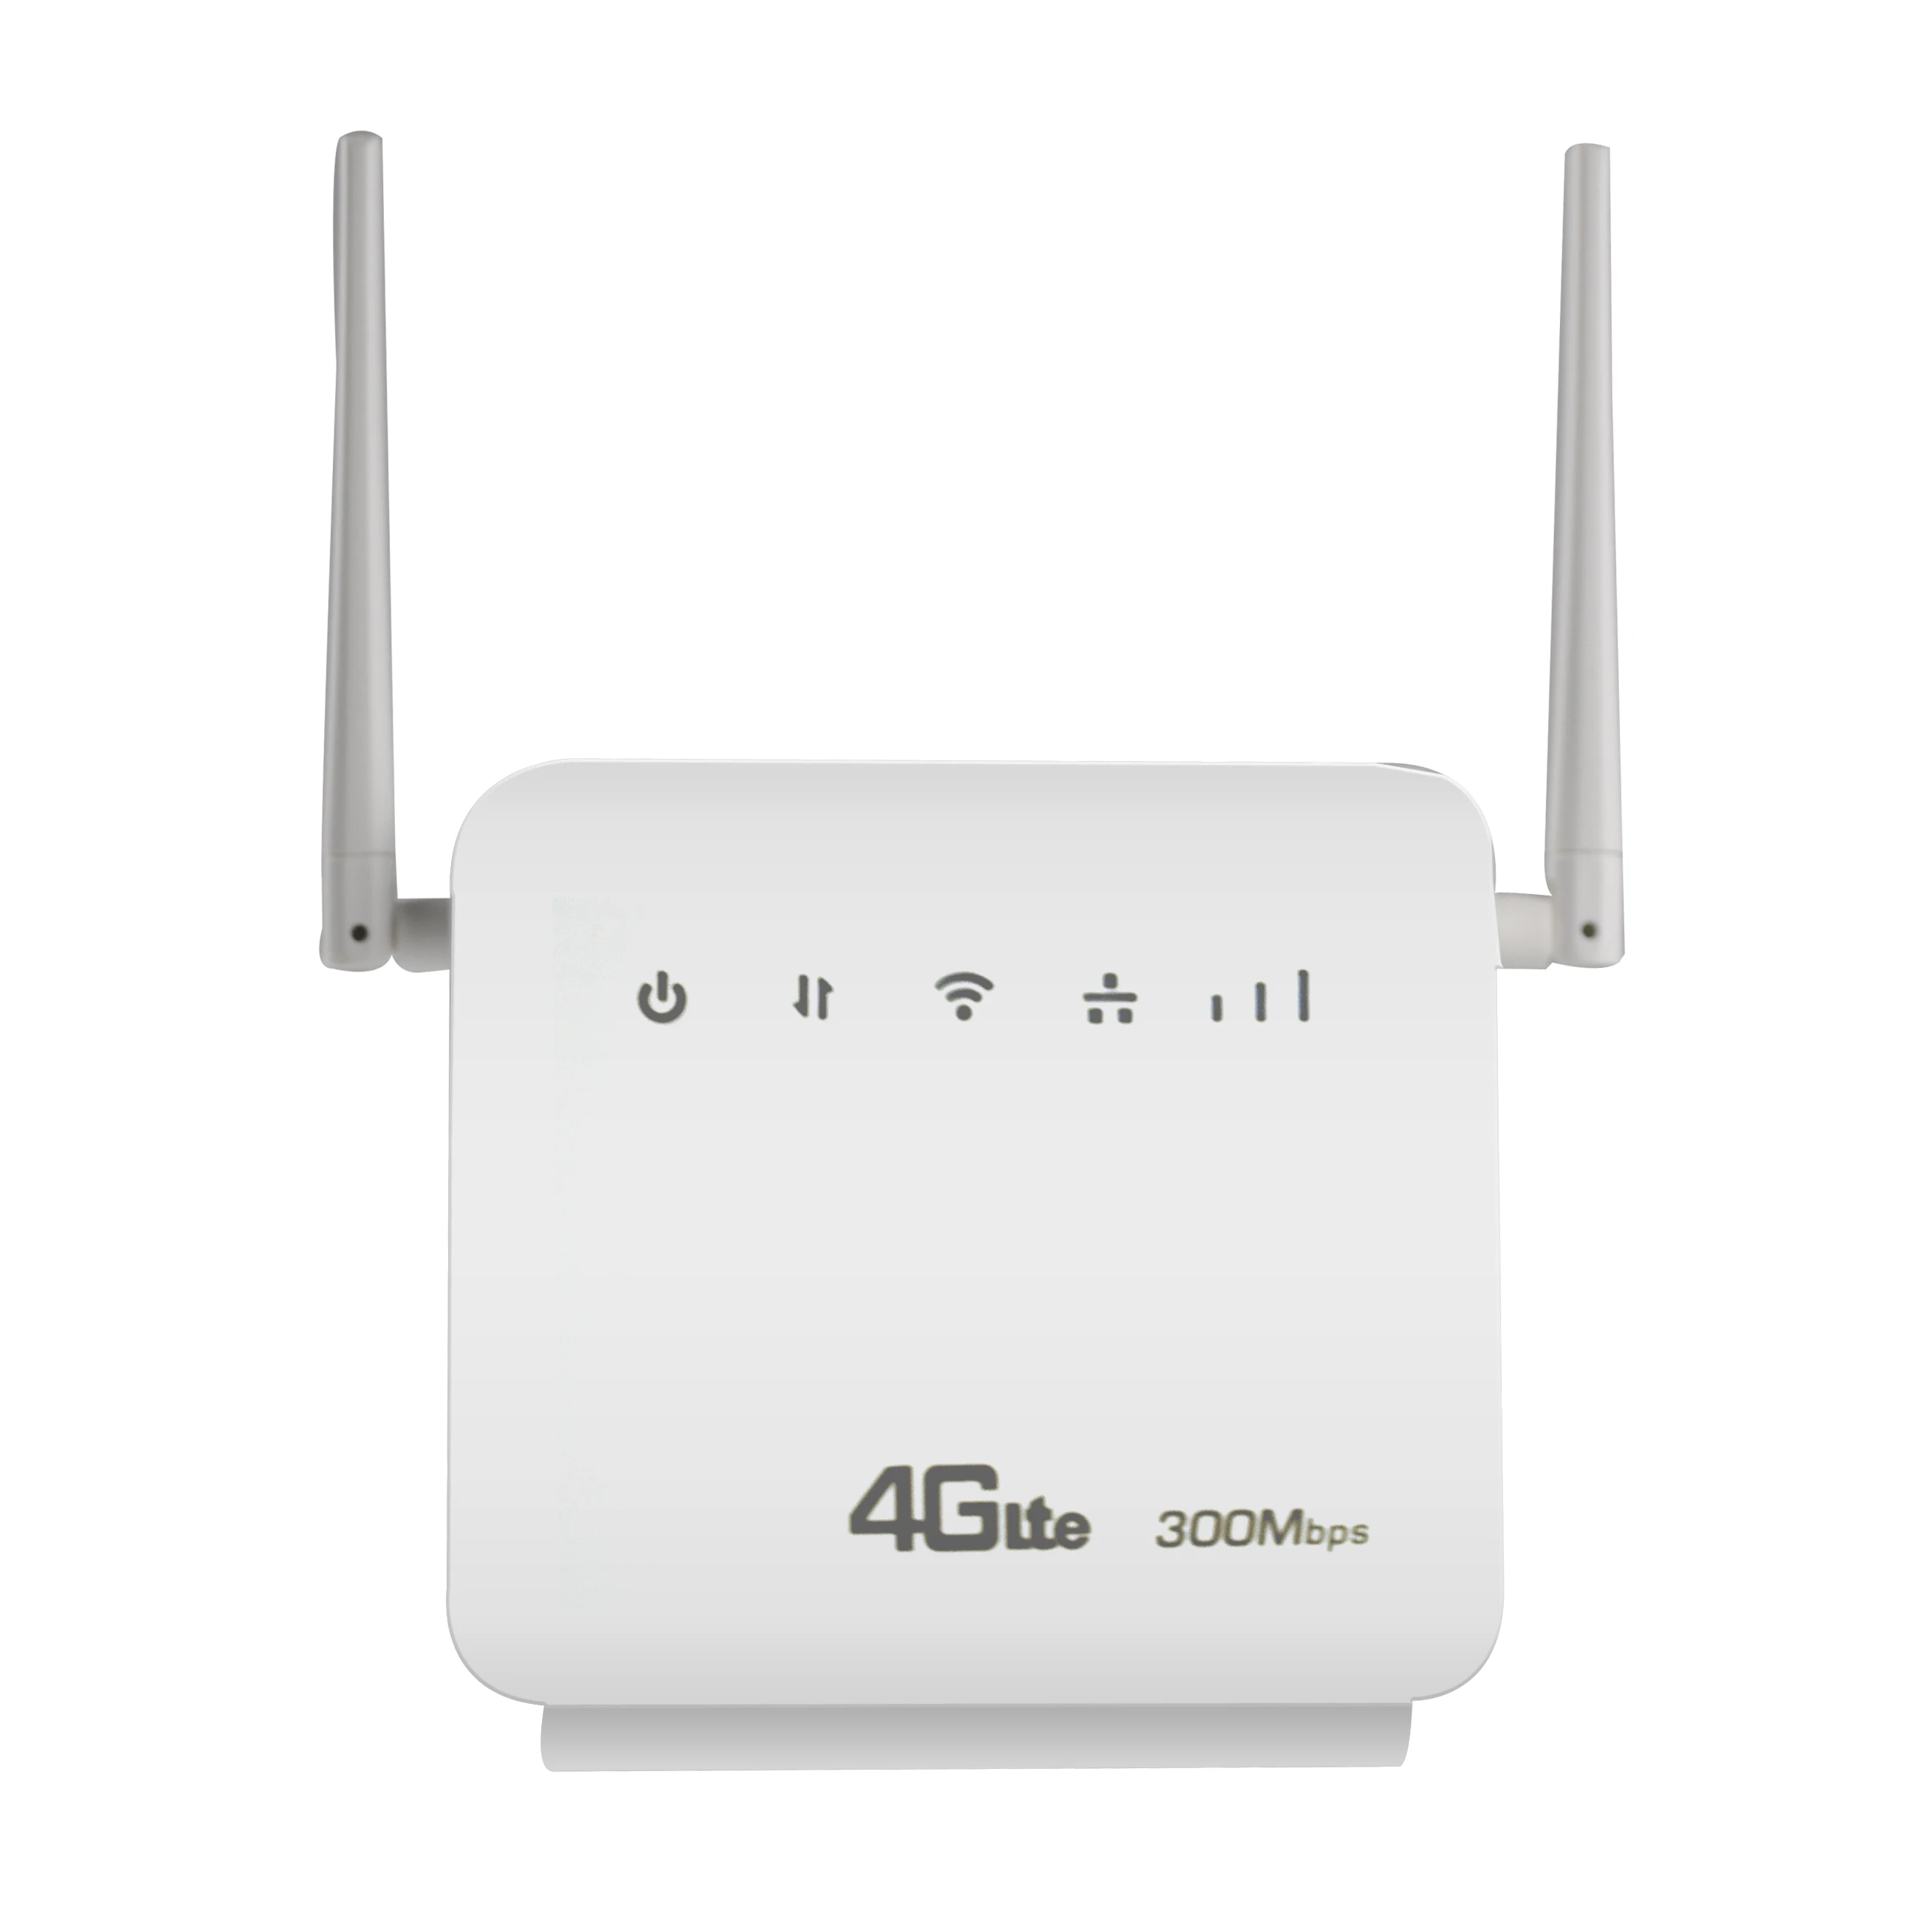 Разблокированный 300 Мбит/с Wi-Fi роутеры 4G LTE CPE мобильный роутер с поддержкой порта LAN sim-карты и Европы/Азии/Ближнего Востока/Африки